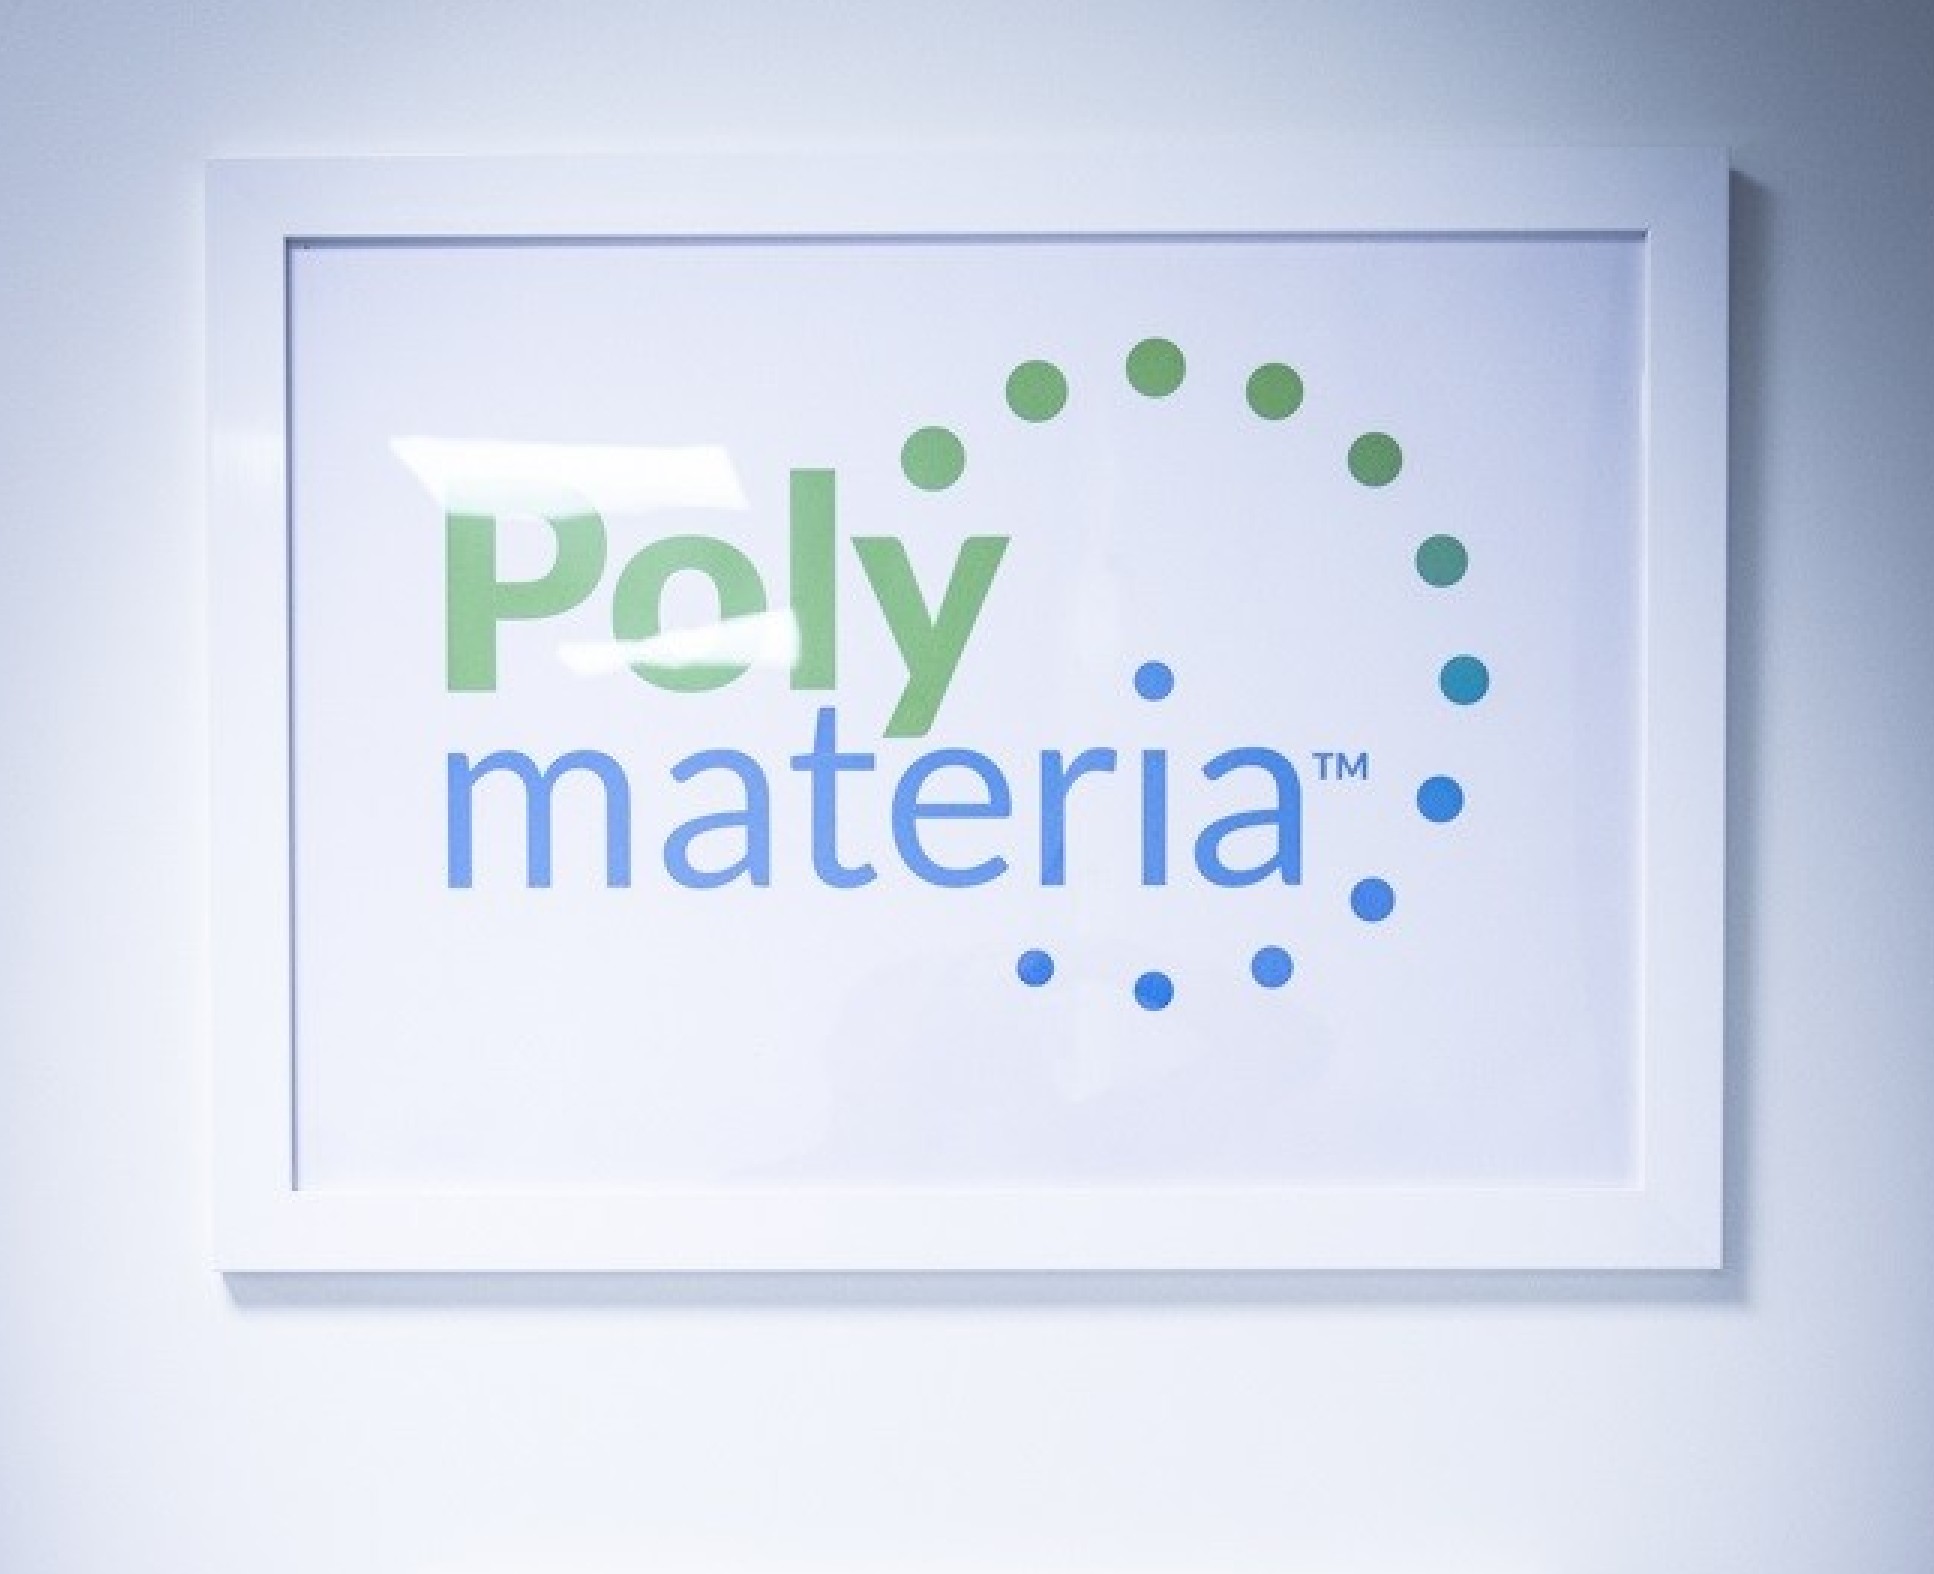 Polymateria logo